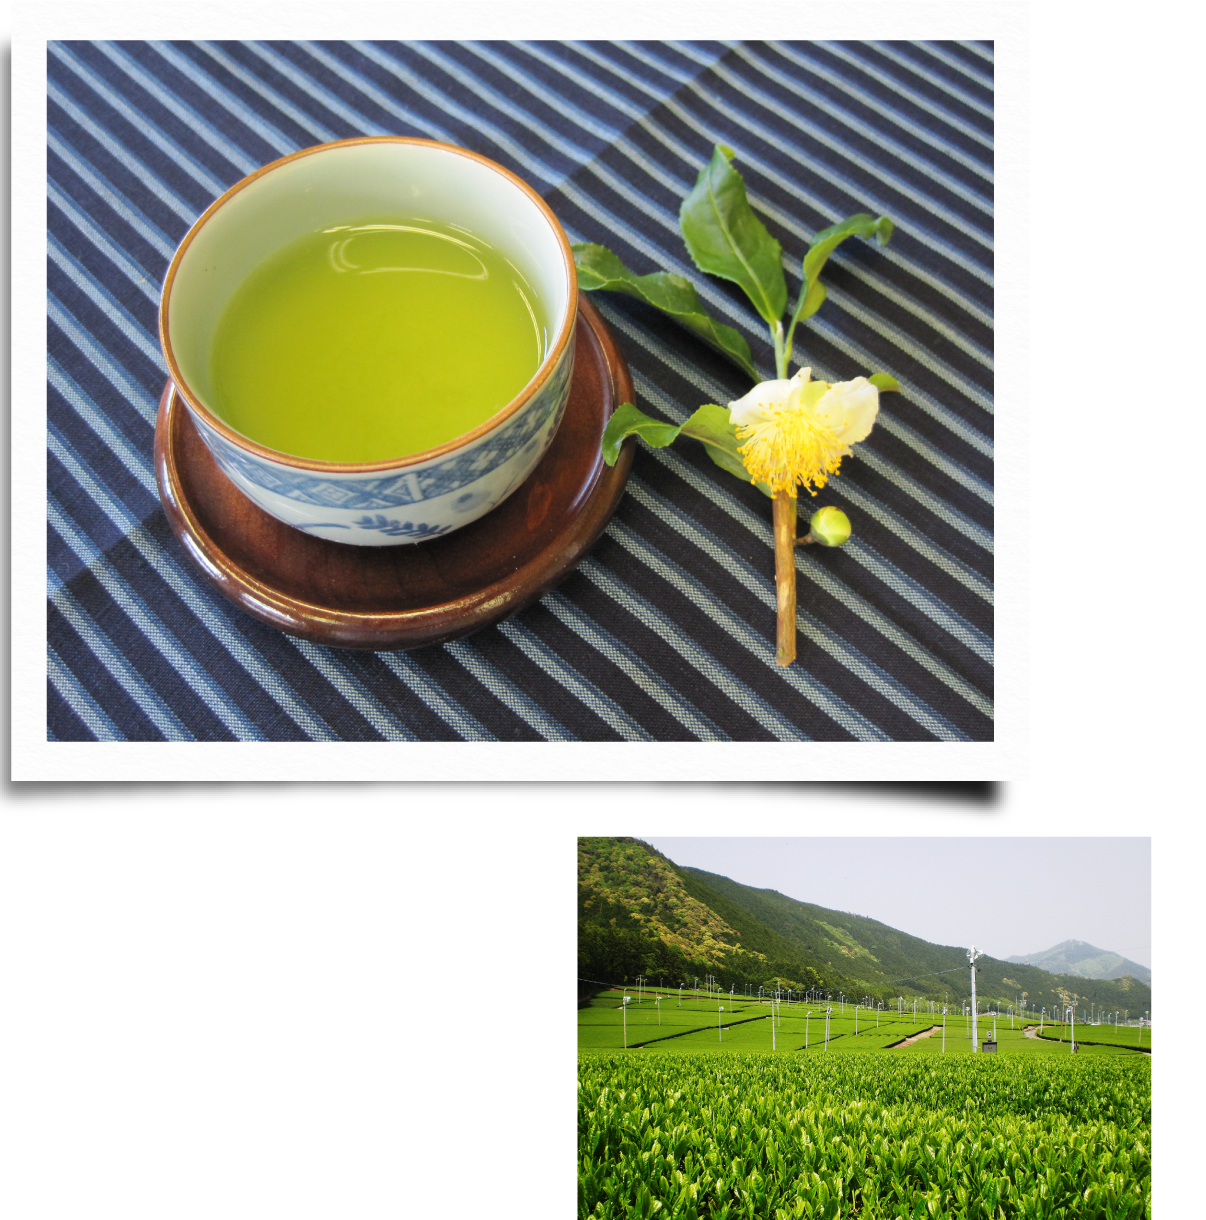 松阪茶 西日本が誇る茶産地で生まれた緑濃い美しき日本茶